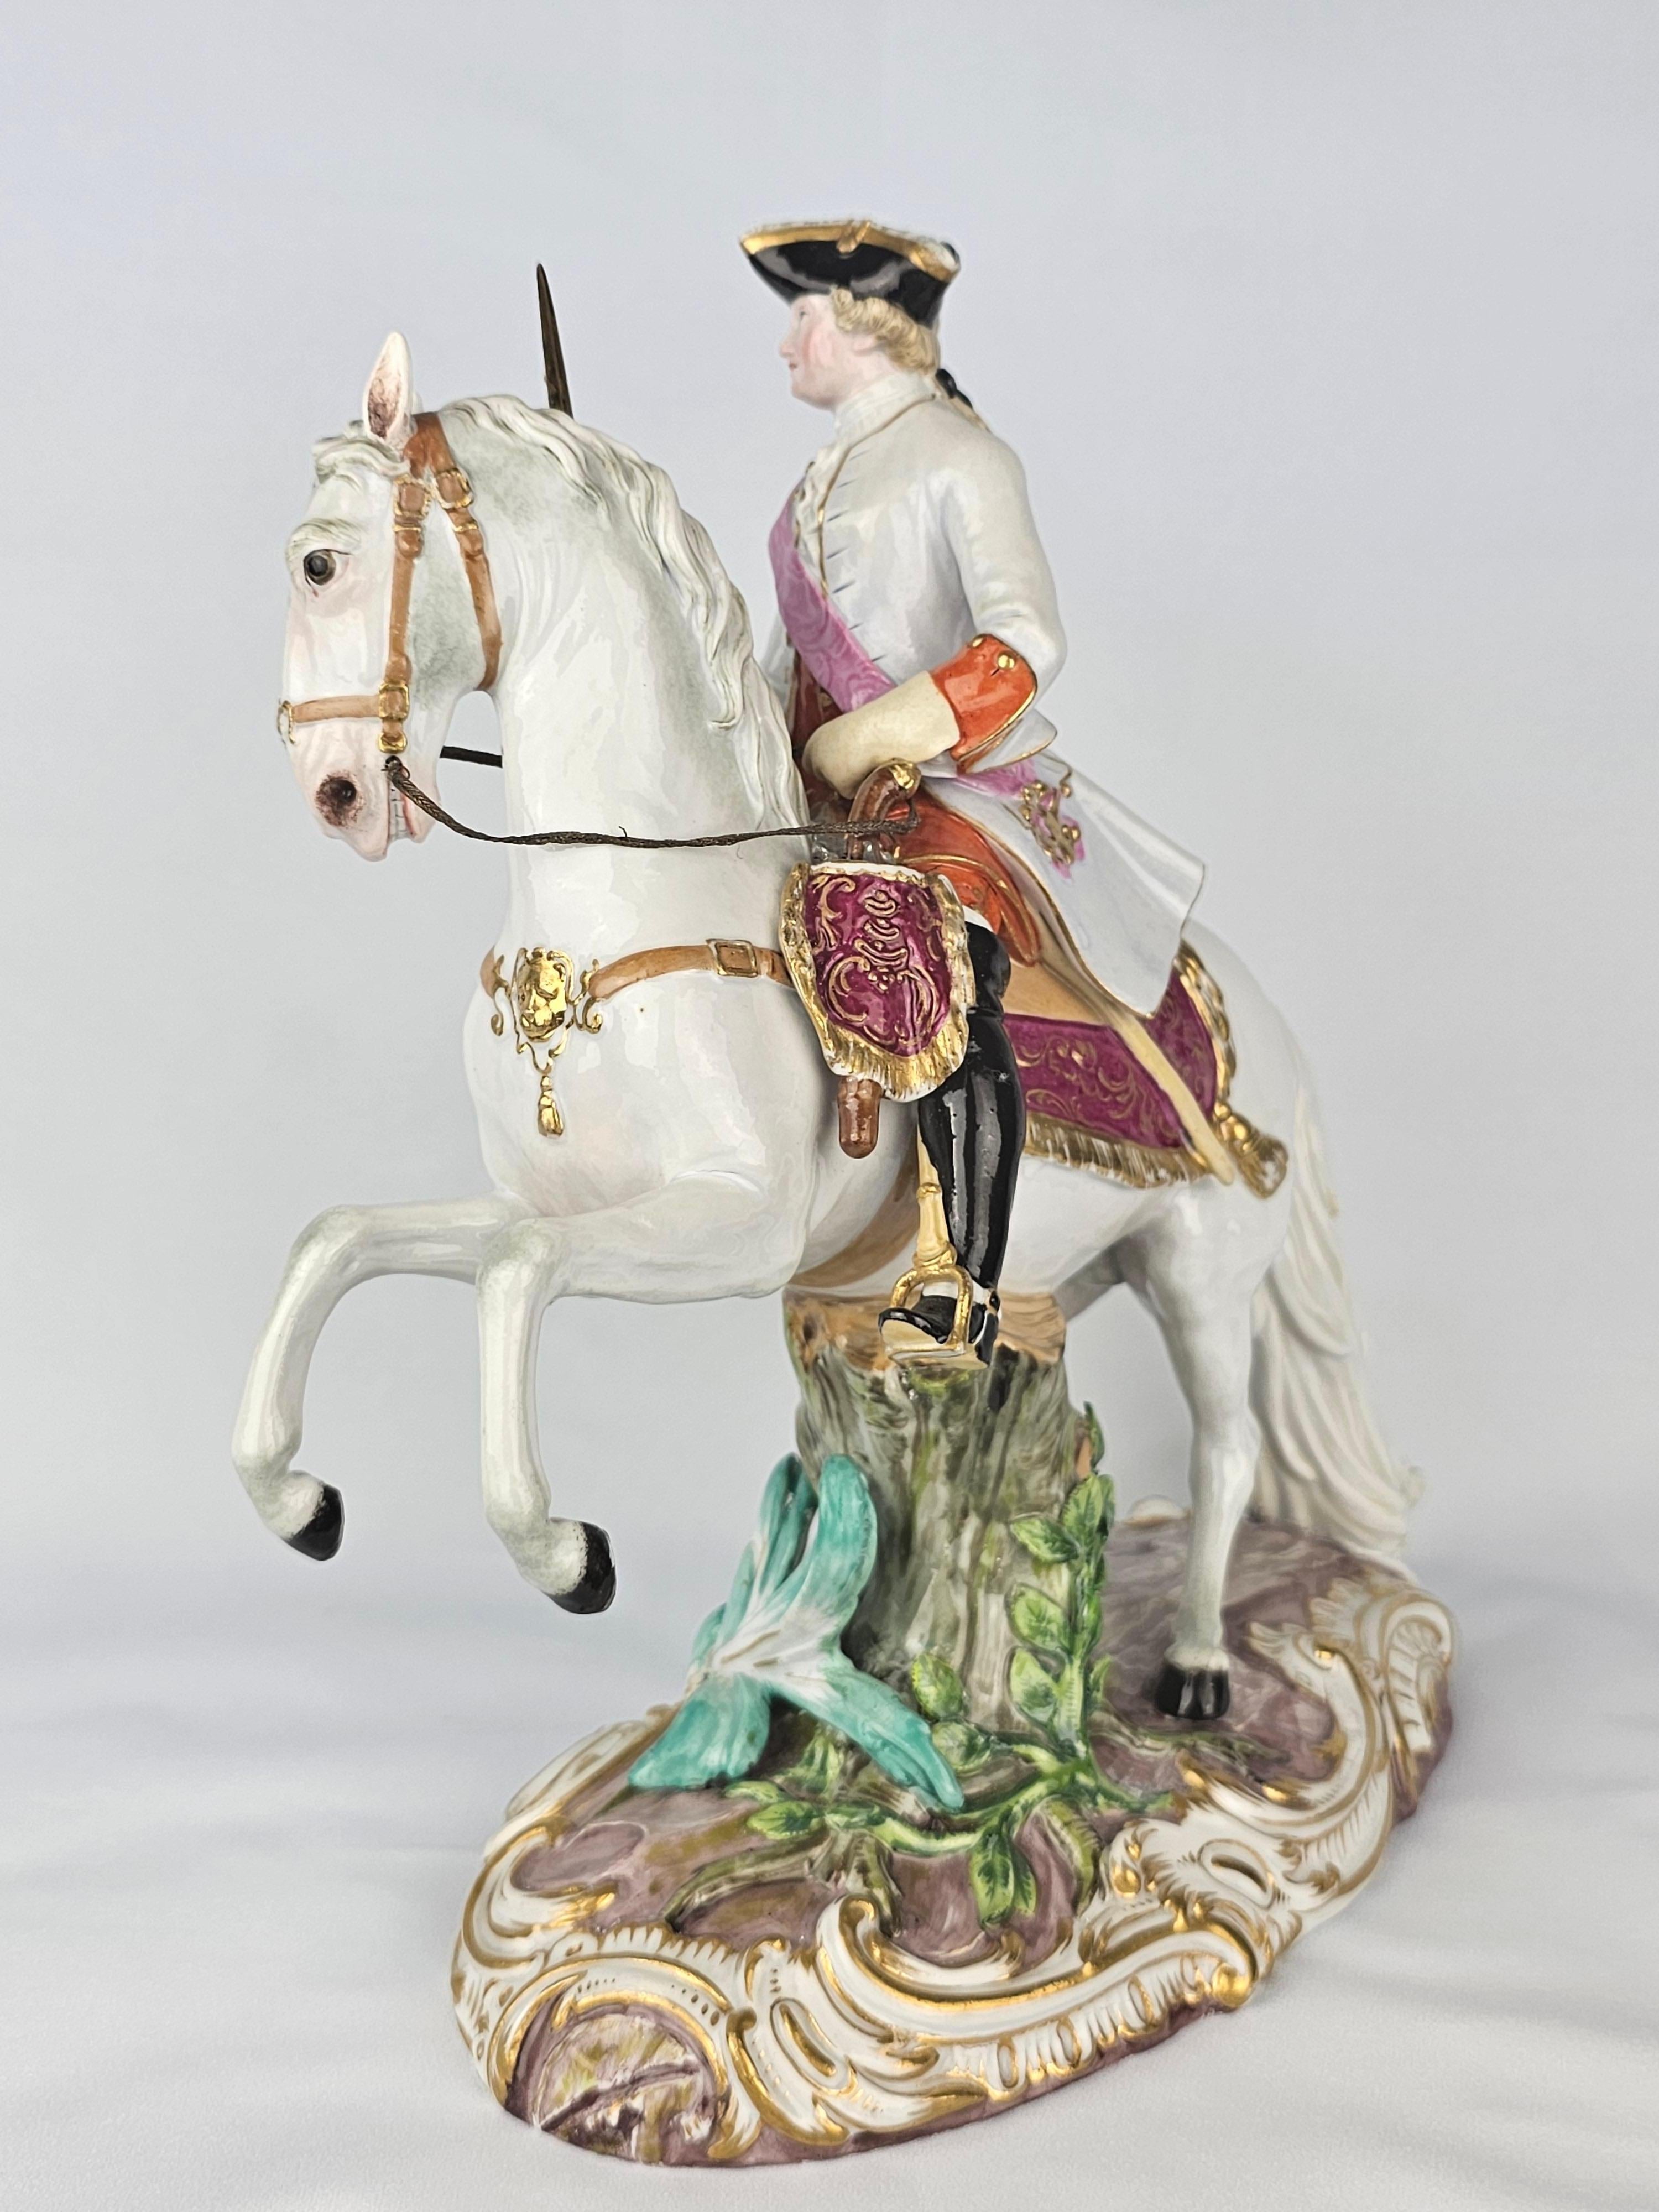 Empress Catherine II on horseback first modelled by J.J Kaendler 1770.
Circa 1880
Model Number c92
Underglaze blue crossed swords